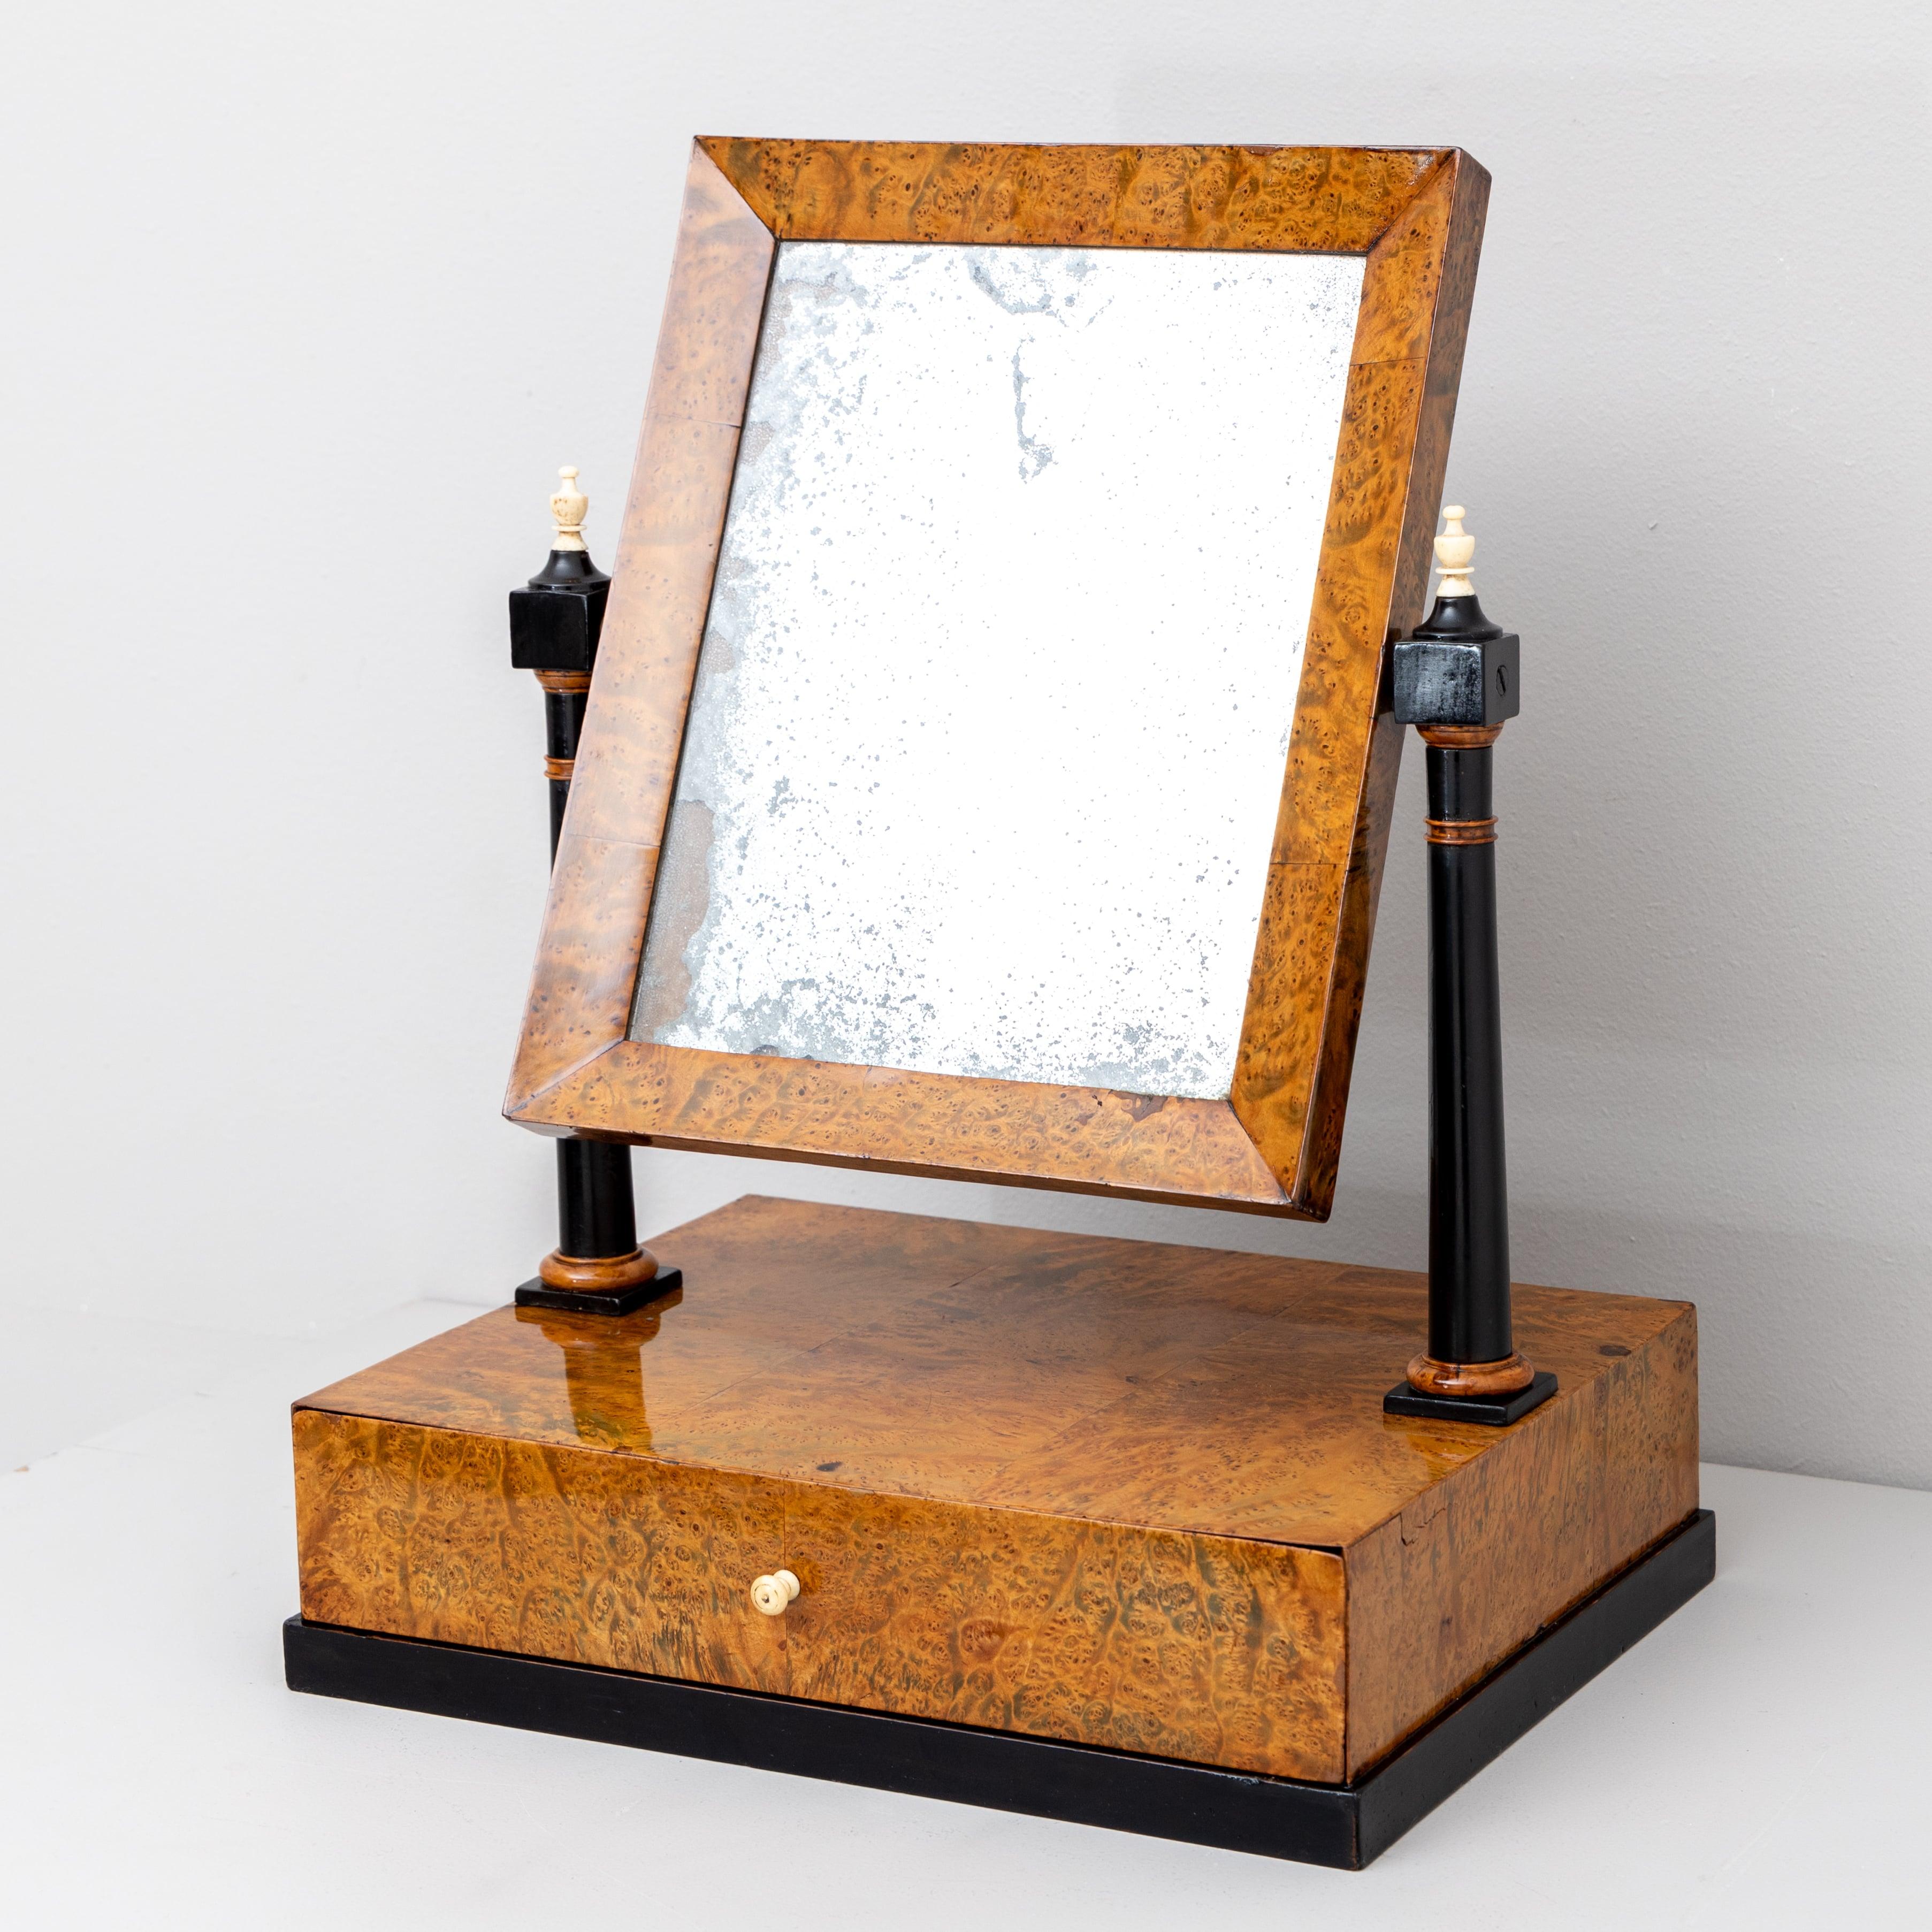 Petit miroir de table plaqué en racine de thuya avec un tiroir et un miroir rectangulaire inclinable. Le miroir est soutenu par deux colonnes ébonisées. L'ancien miroir est aveugle par endroits.